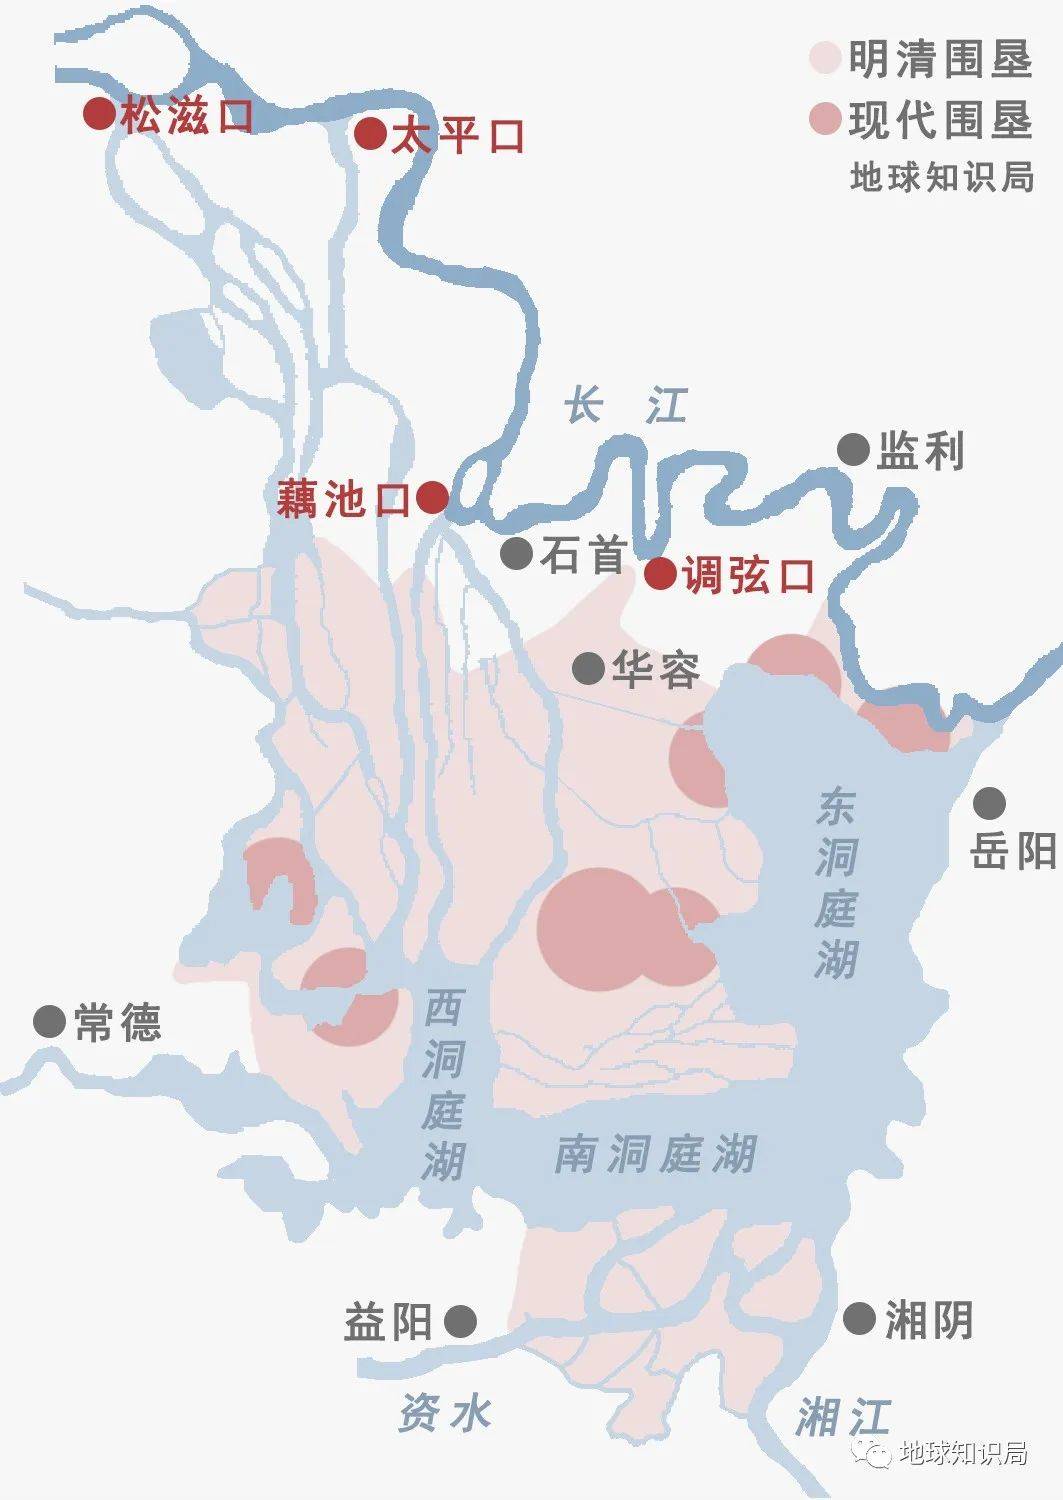 所以才出现了洞庭湖与北方长江,有众多水道相连的状况▼